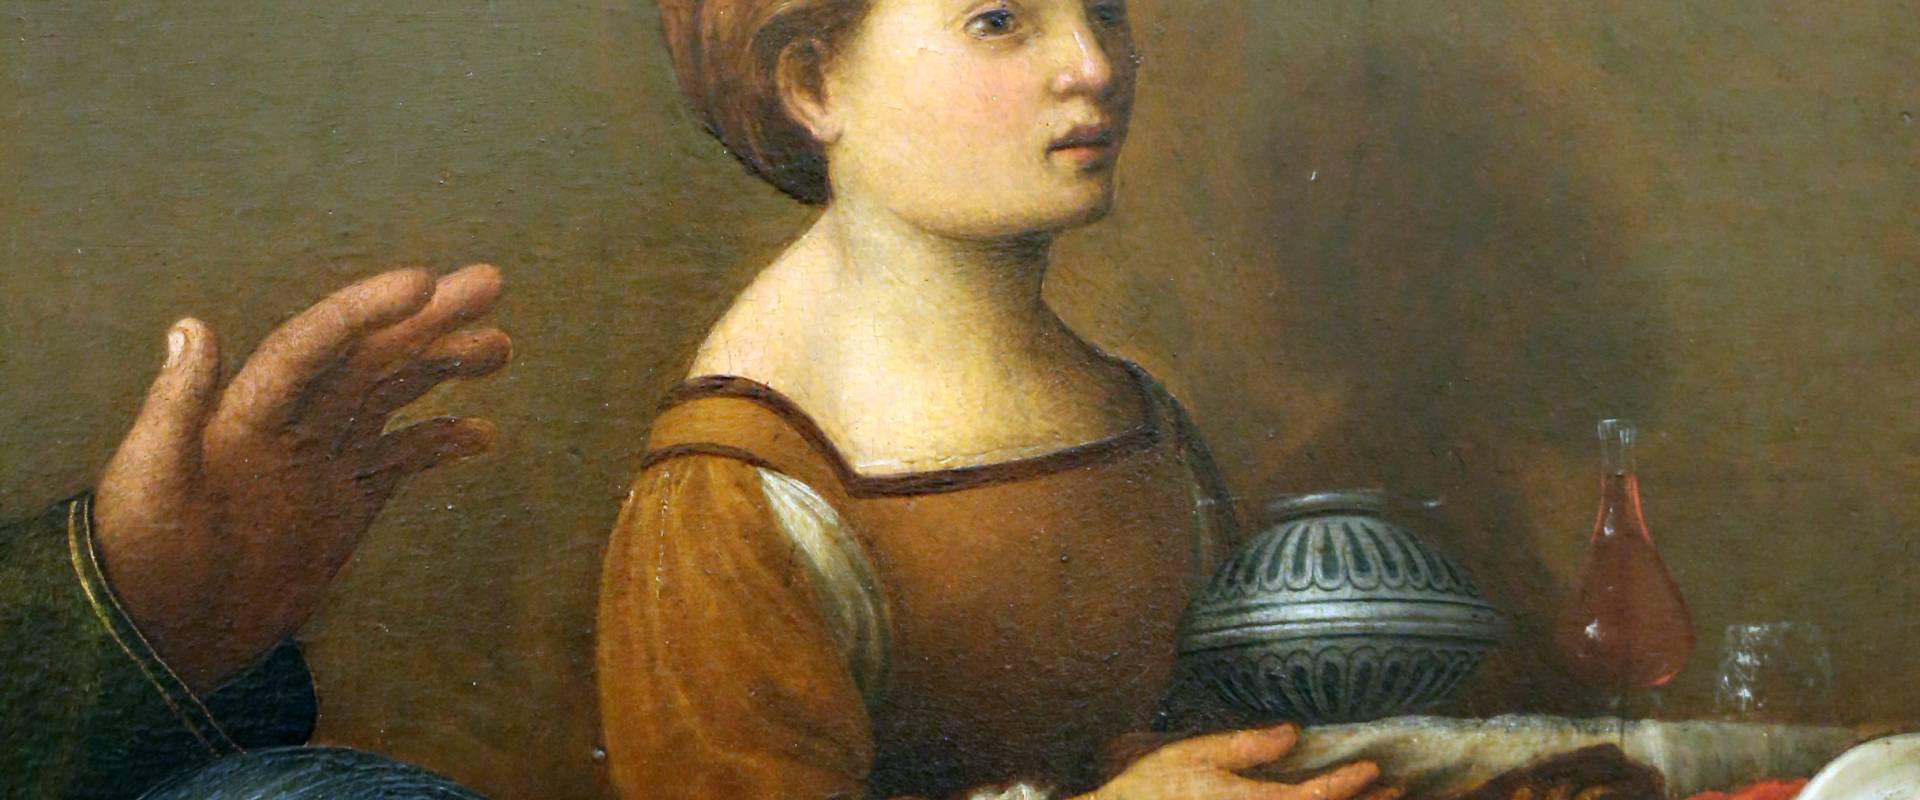 Giuliano bugiardini, nascita del battista, 1517-18, 05 foto di Sailko